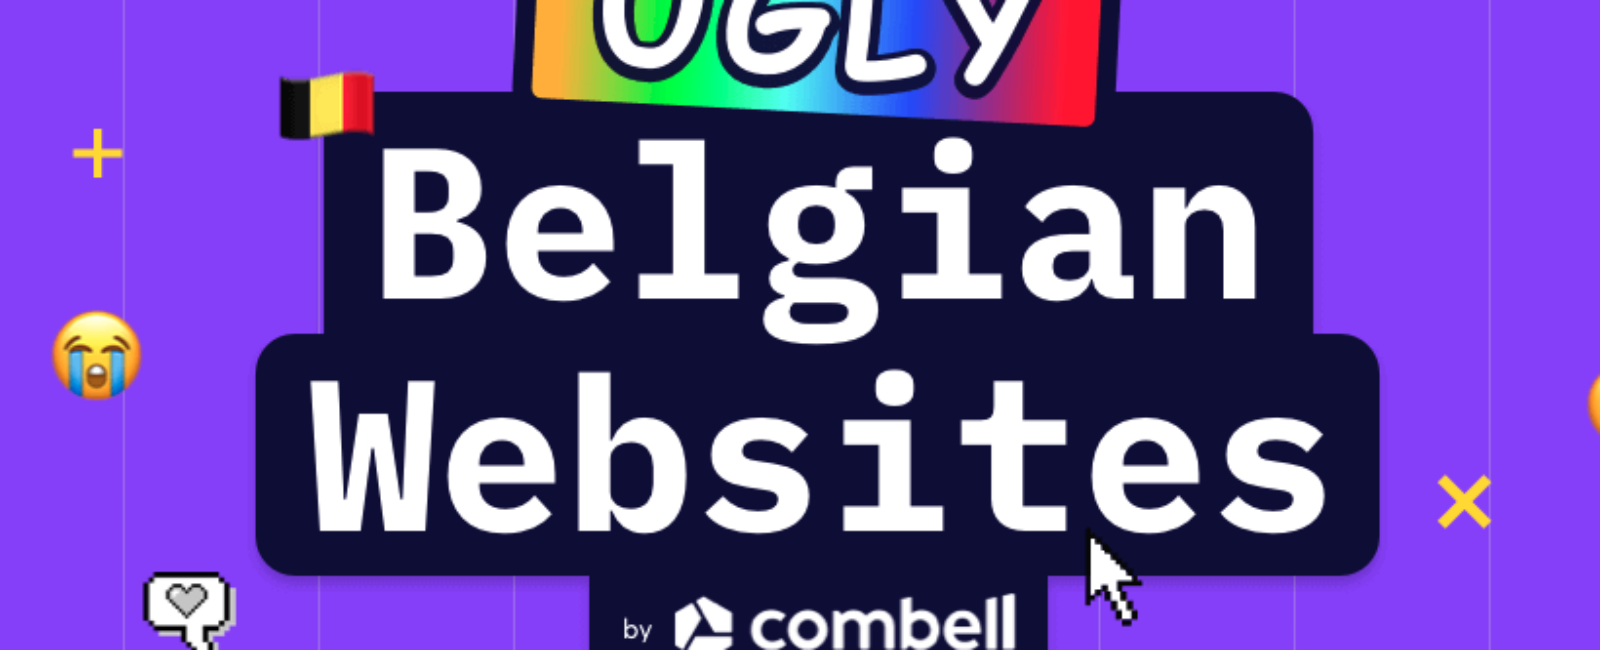 Ugly Belgian Websites, de lelijkste websites van België